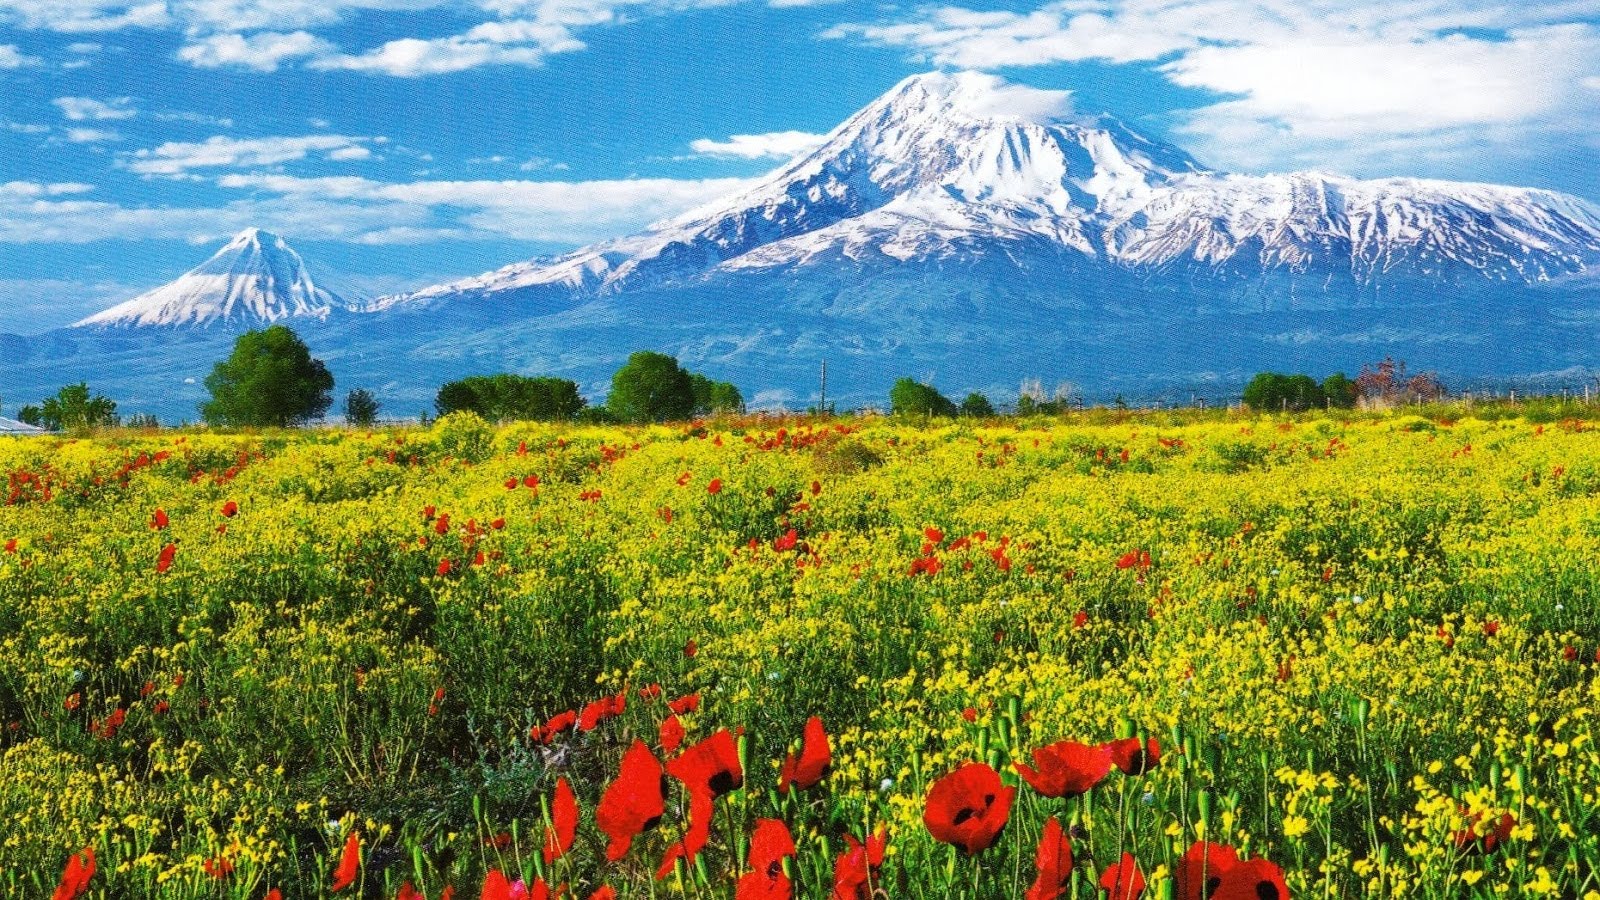 Ermenistan, Rus turistler için 5 en ucuz tatil yölerinden biri